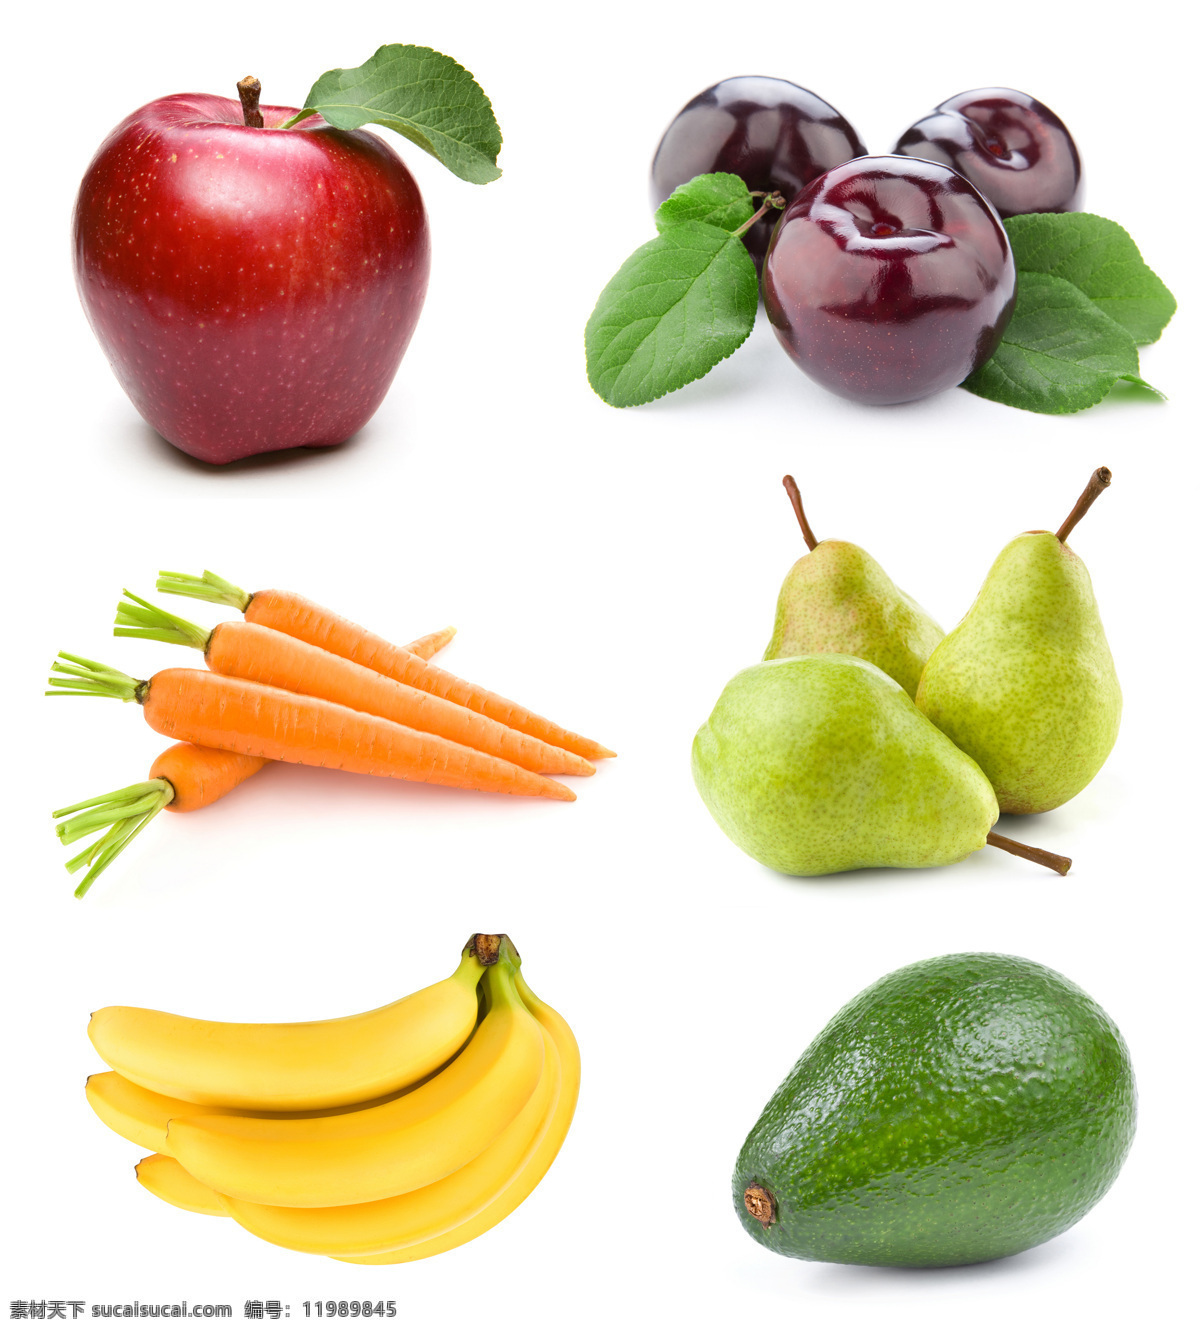 高清 水果 香蕉 苹果 黑布梨 萝卜 梨 水果摄影 水果广告 食物 水果图片 餐饮美食